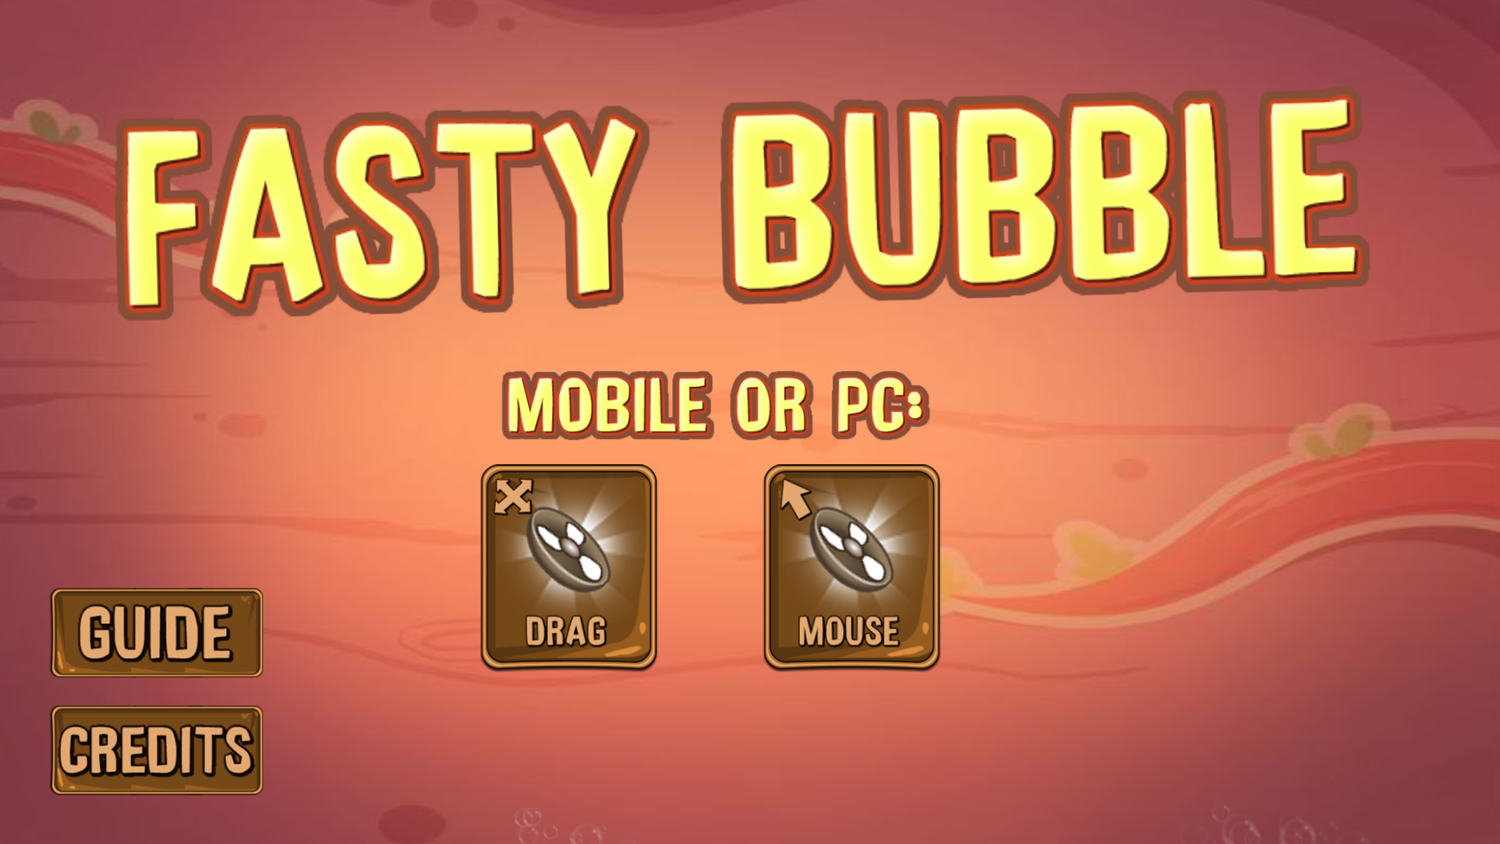 Fasty Bubble Welcome Screen Screenshot.